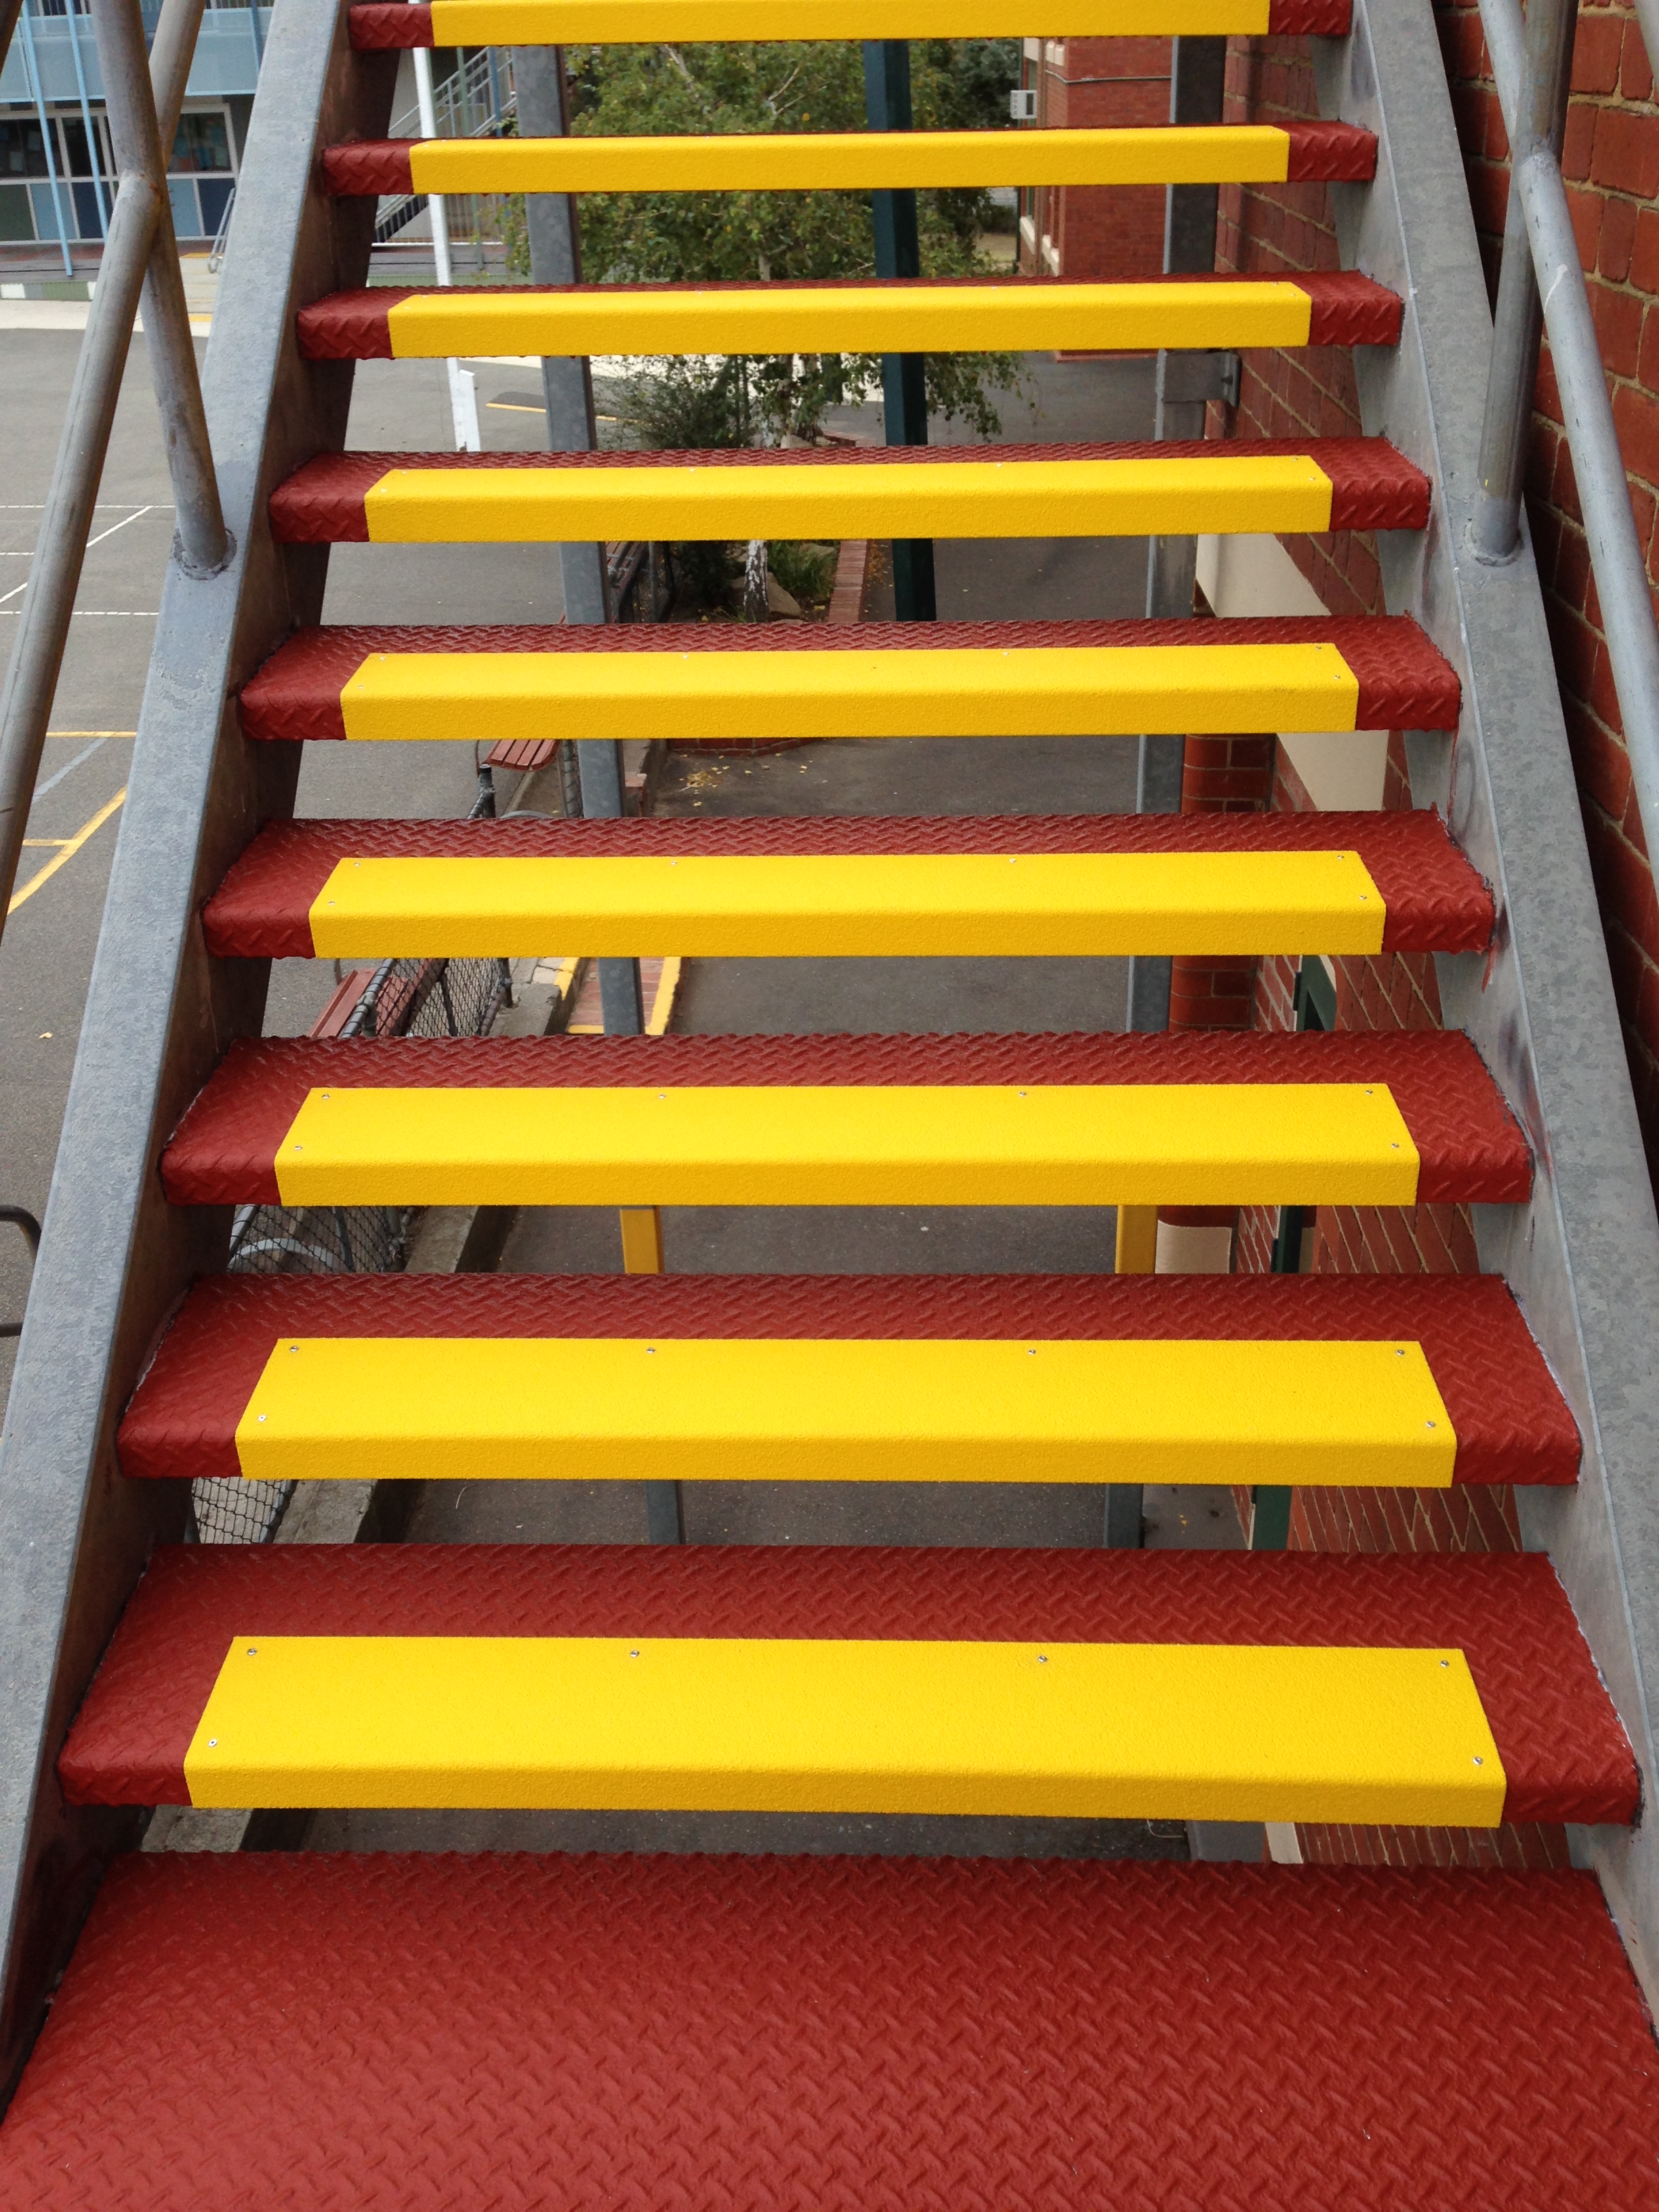 Anti-Slip Stair Nosing over Metal Stair Nosing - West Preston Primary School